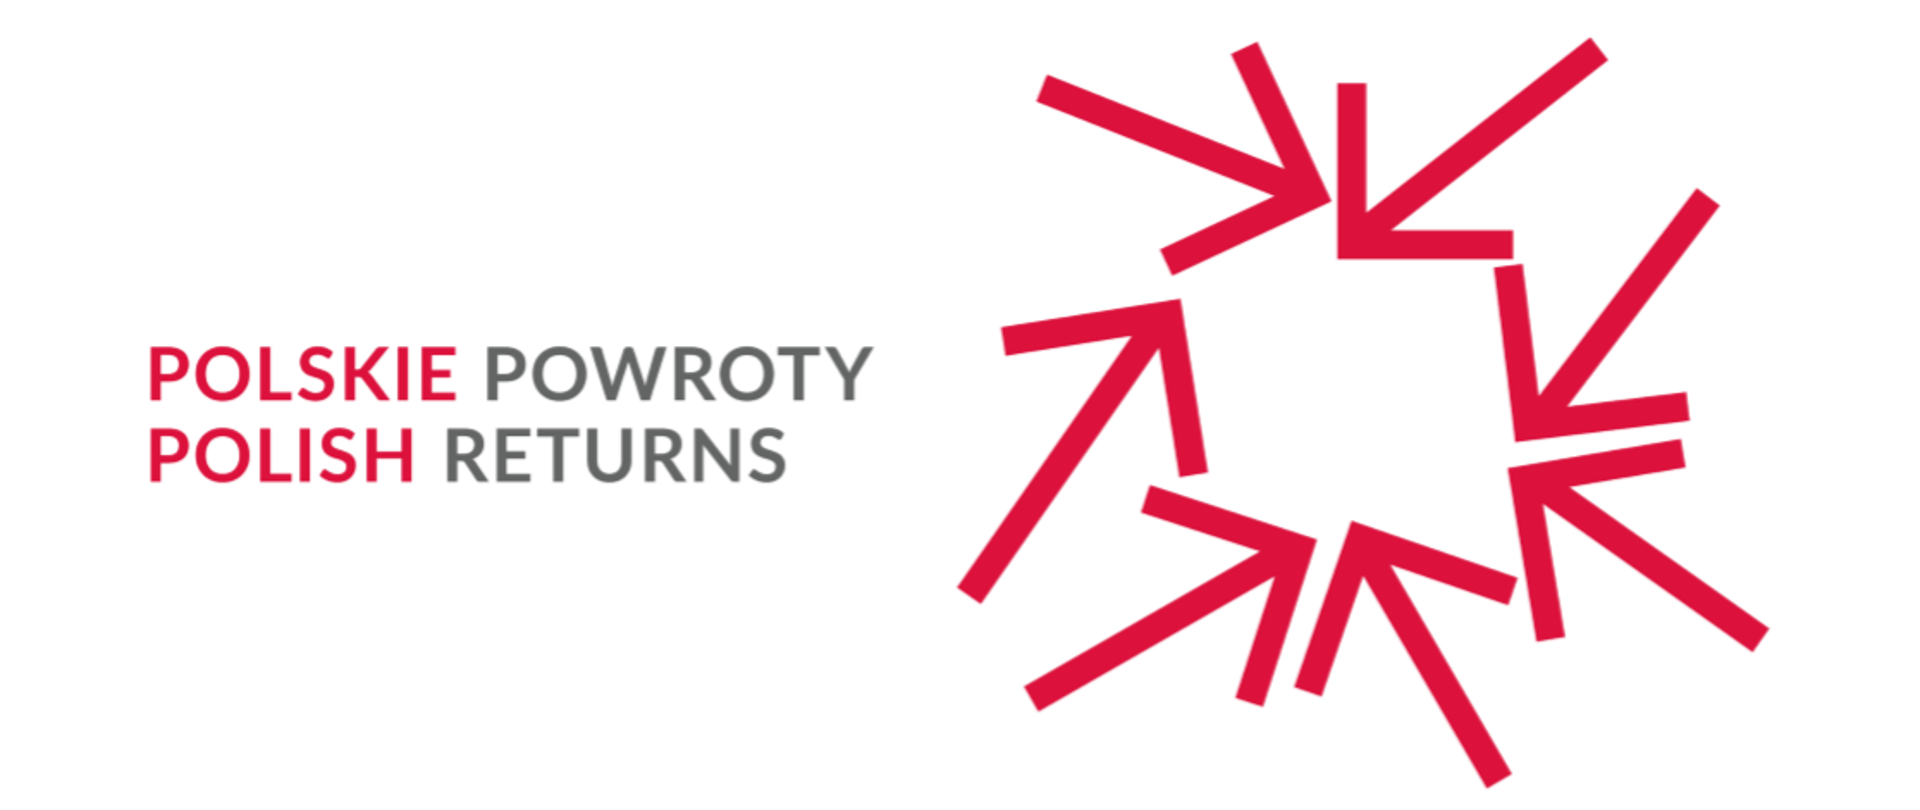 PolskiePowroty_logo